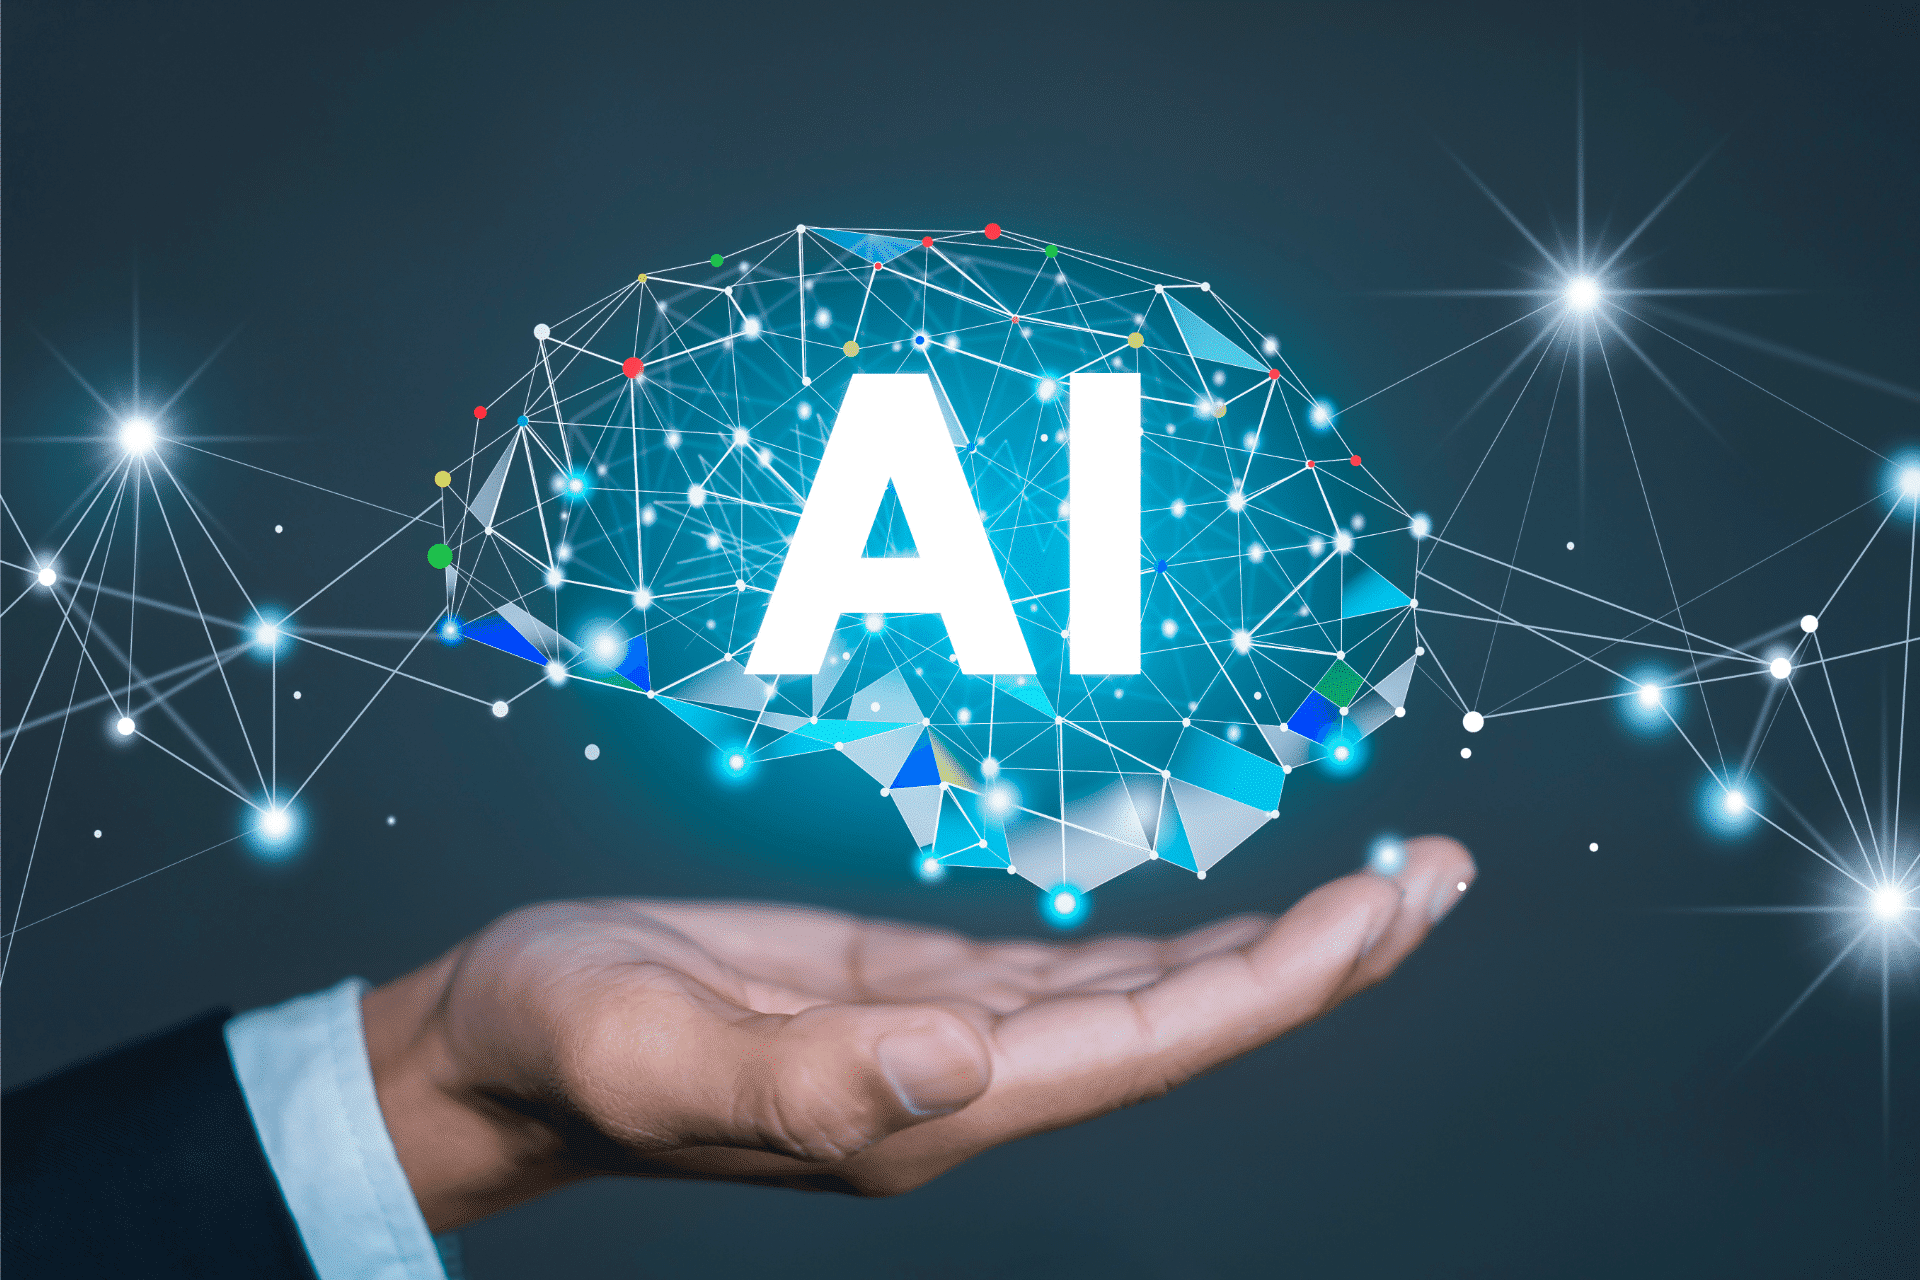  ‣ adn24 tecnologia | intelligenza artificiale e allerta elezioni: "servono strumenti per distinguere vero dal falso"